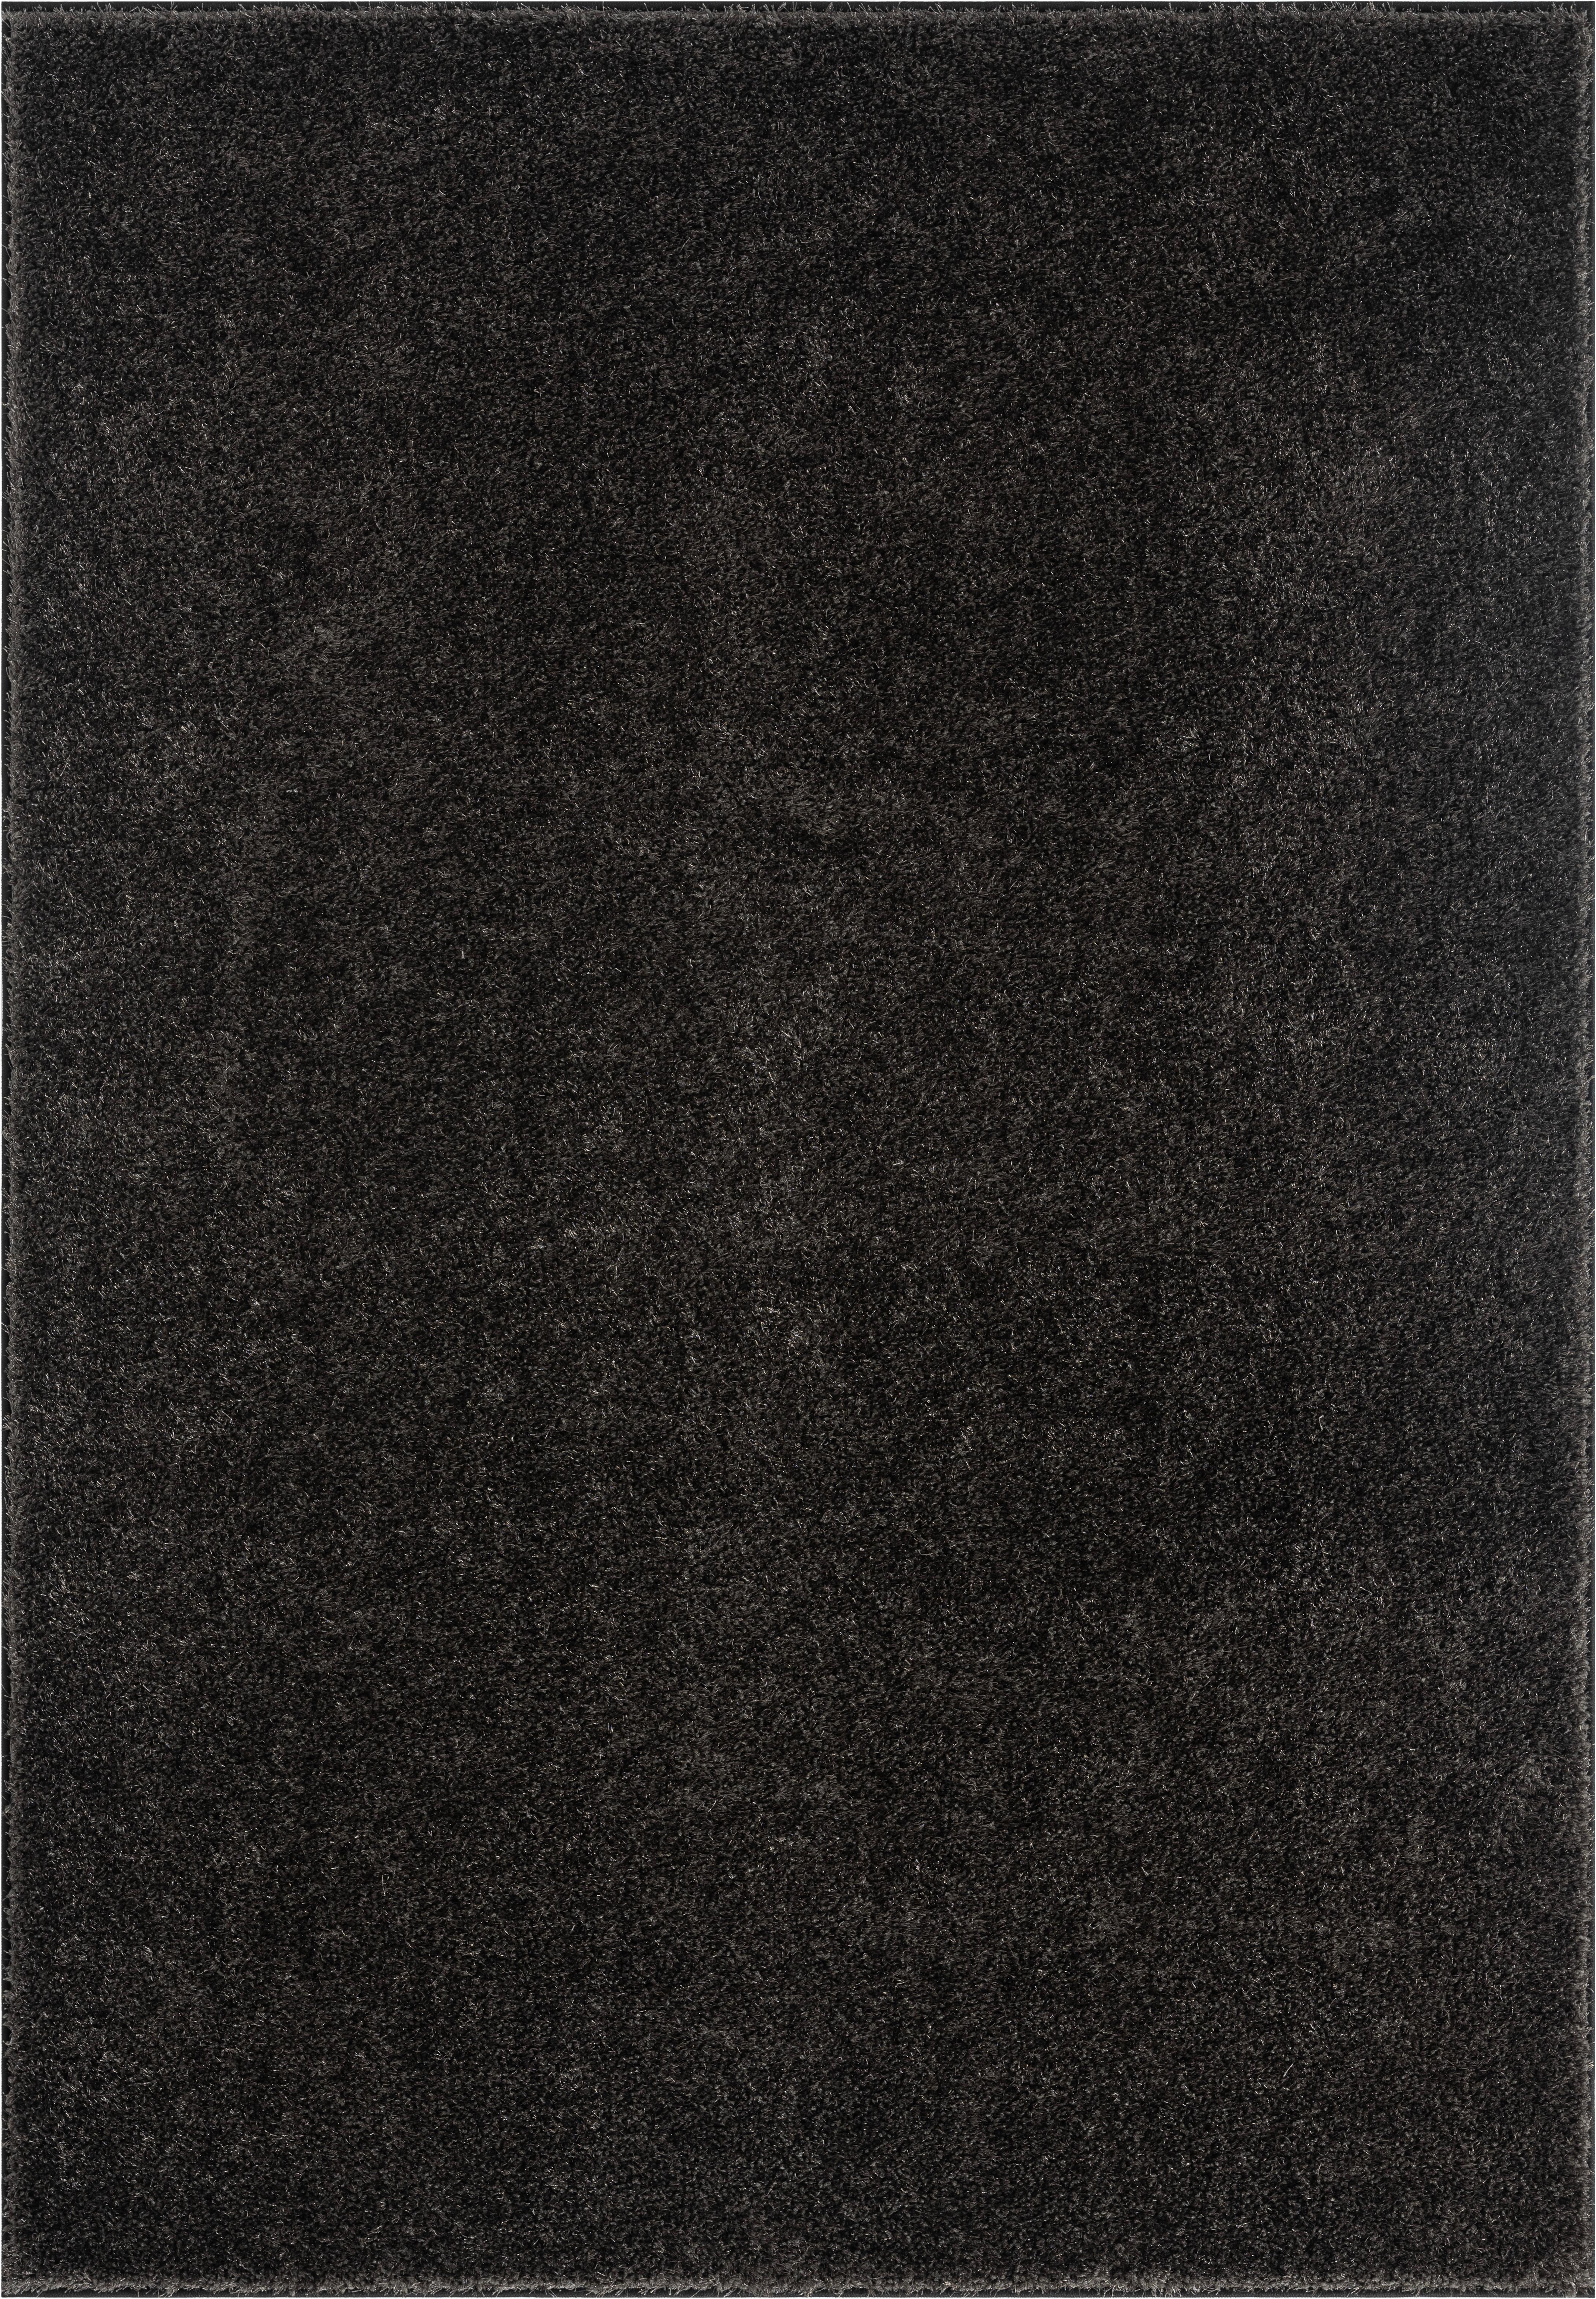  RUGMRZ Carpet 160 x 220 cm Grauer Teppich mit Blättern